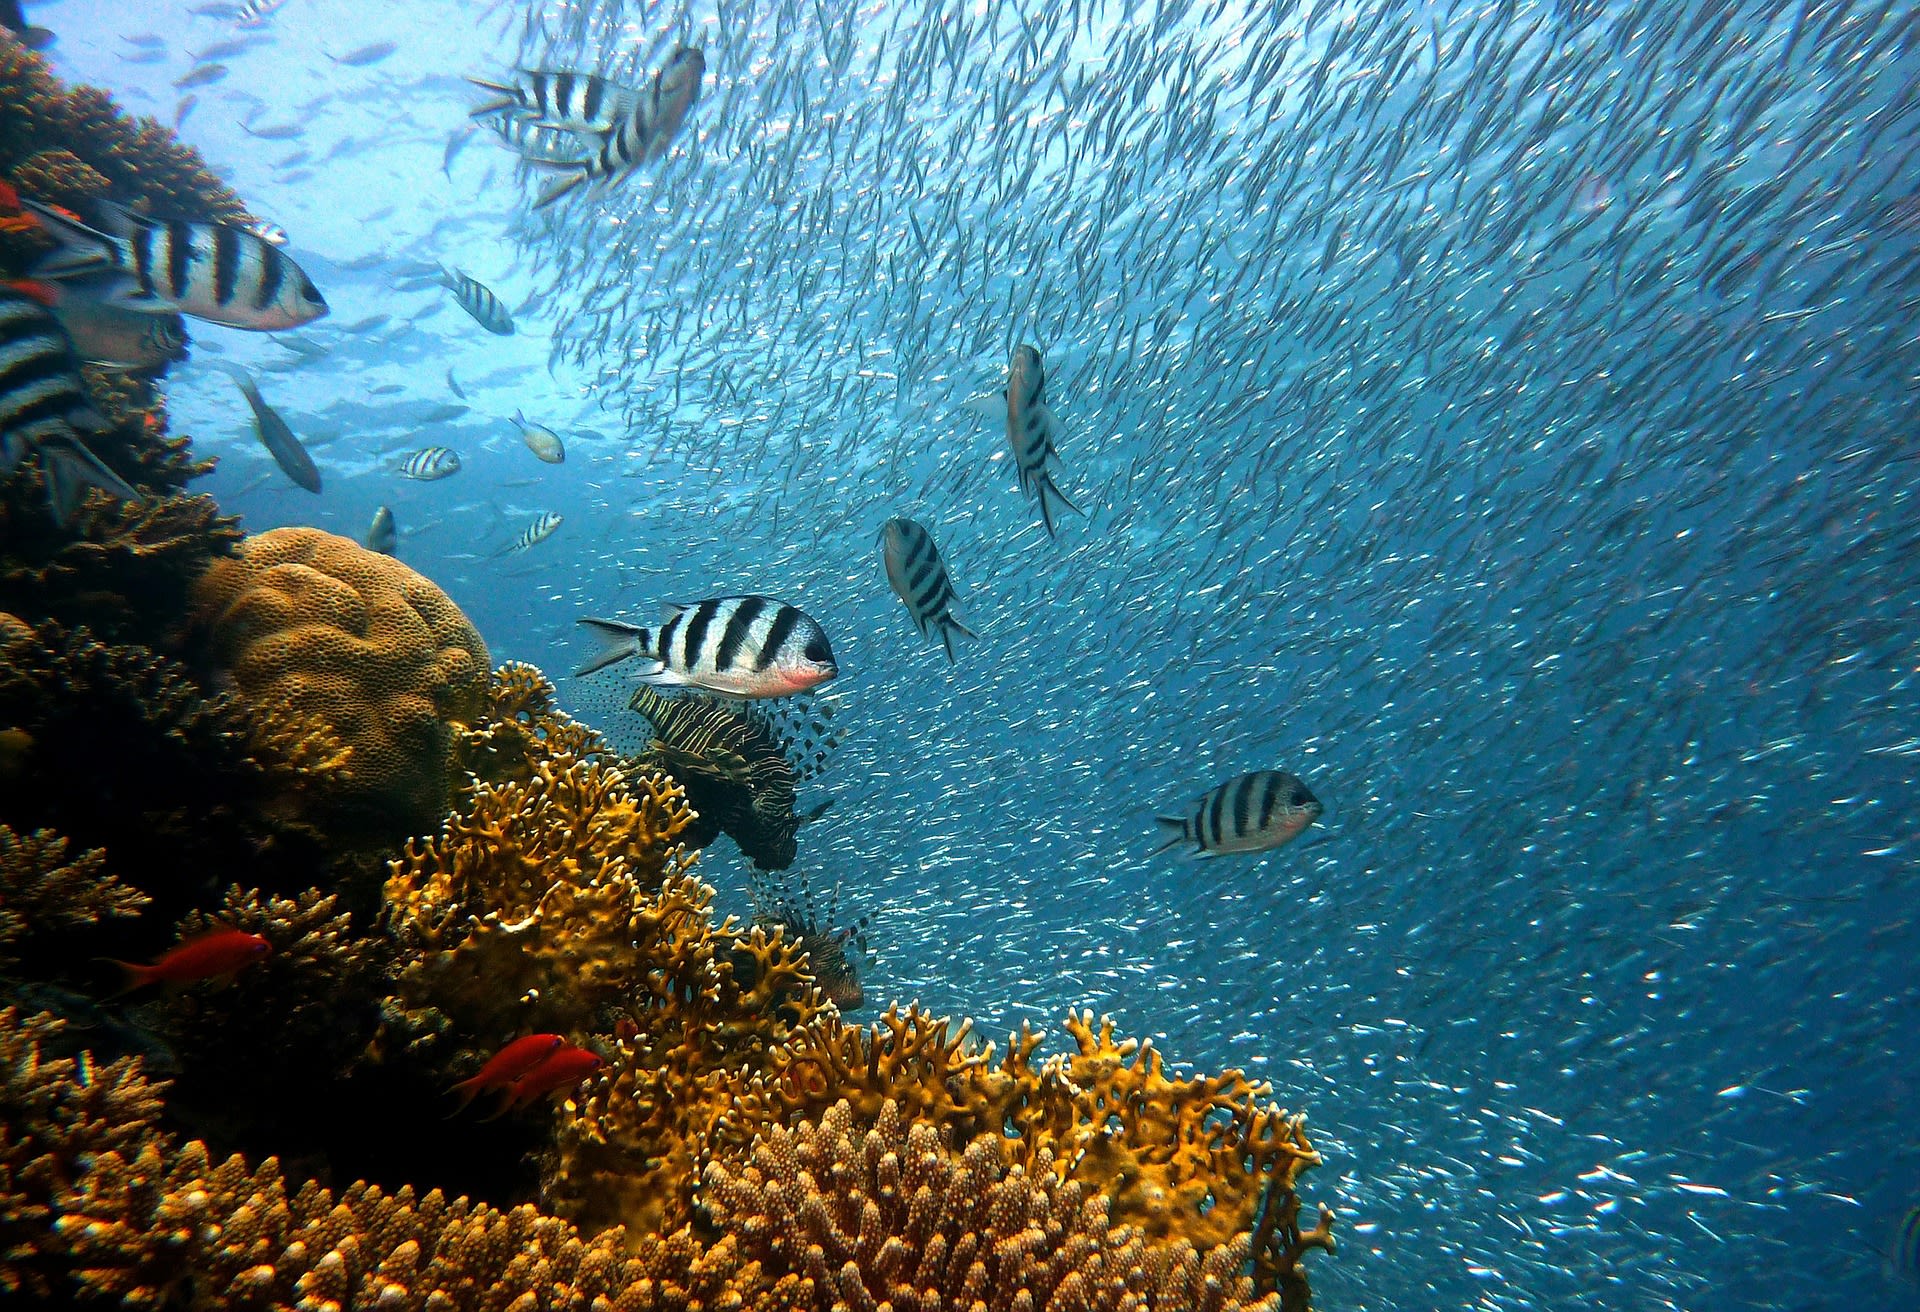 Velký bariérový útes v Austrálii ožívá novým životem. Ve velkém se zde začaly množit korály.